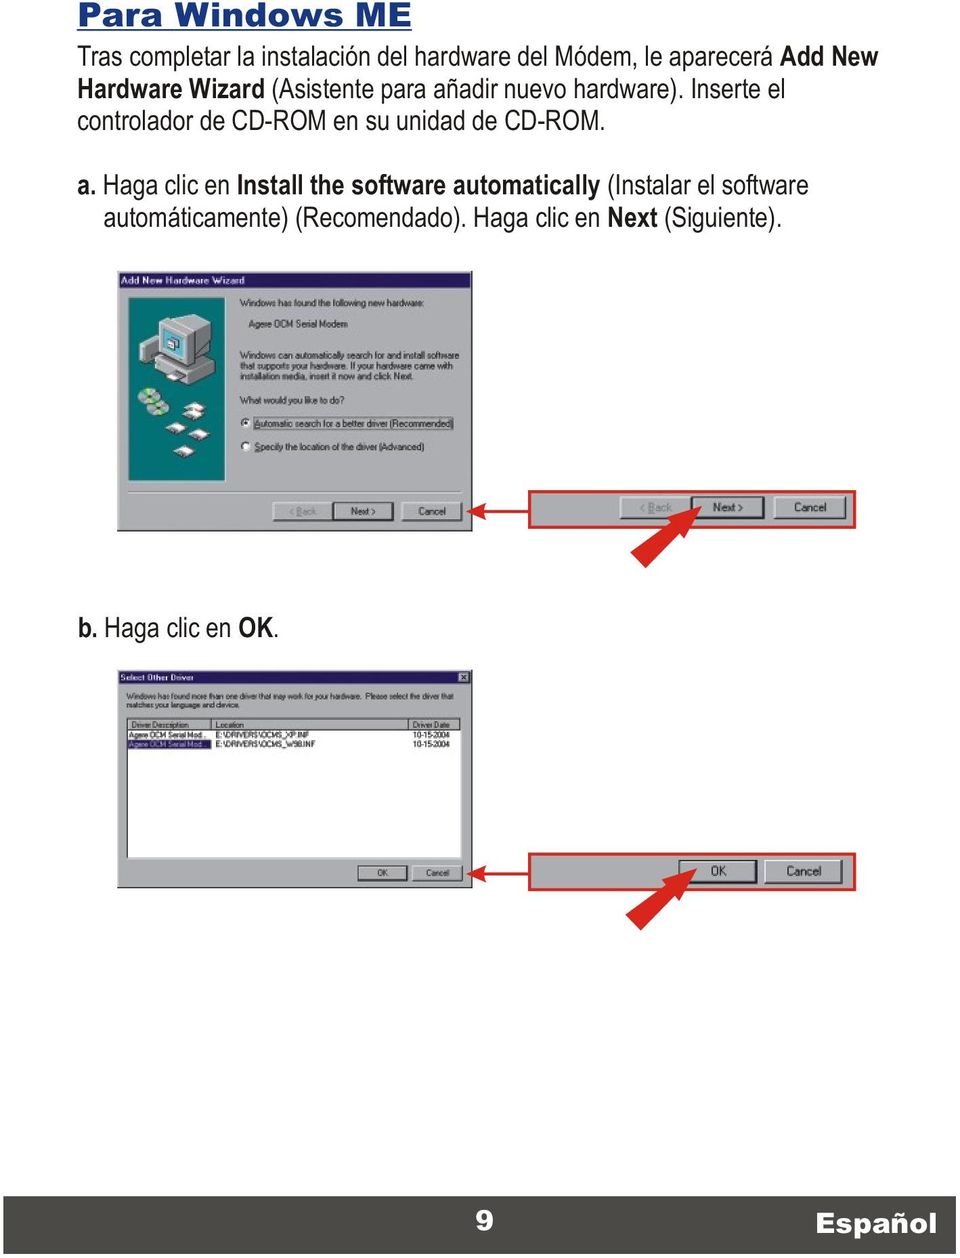 Inserte el controlador de CD-ROM en su unidad de CD-ROM. a.